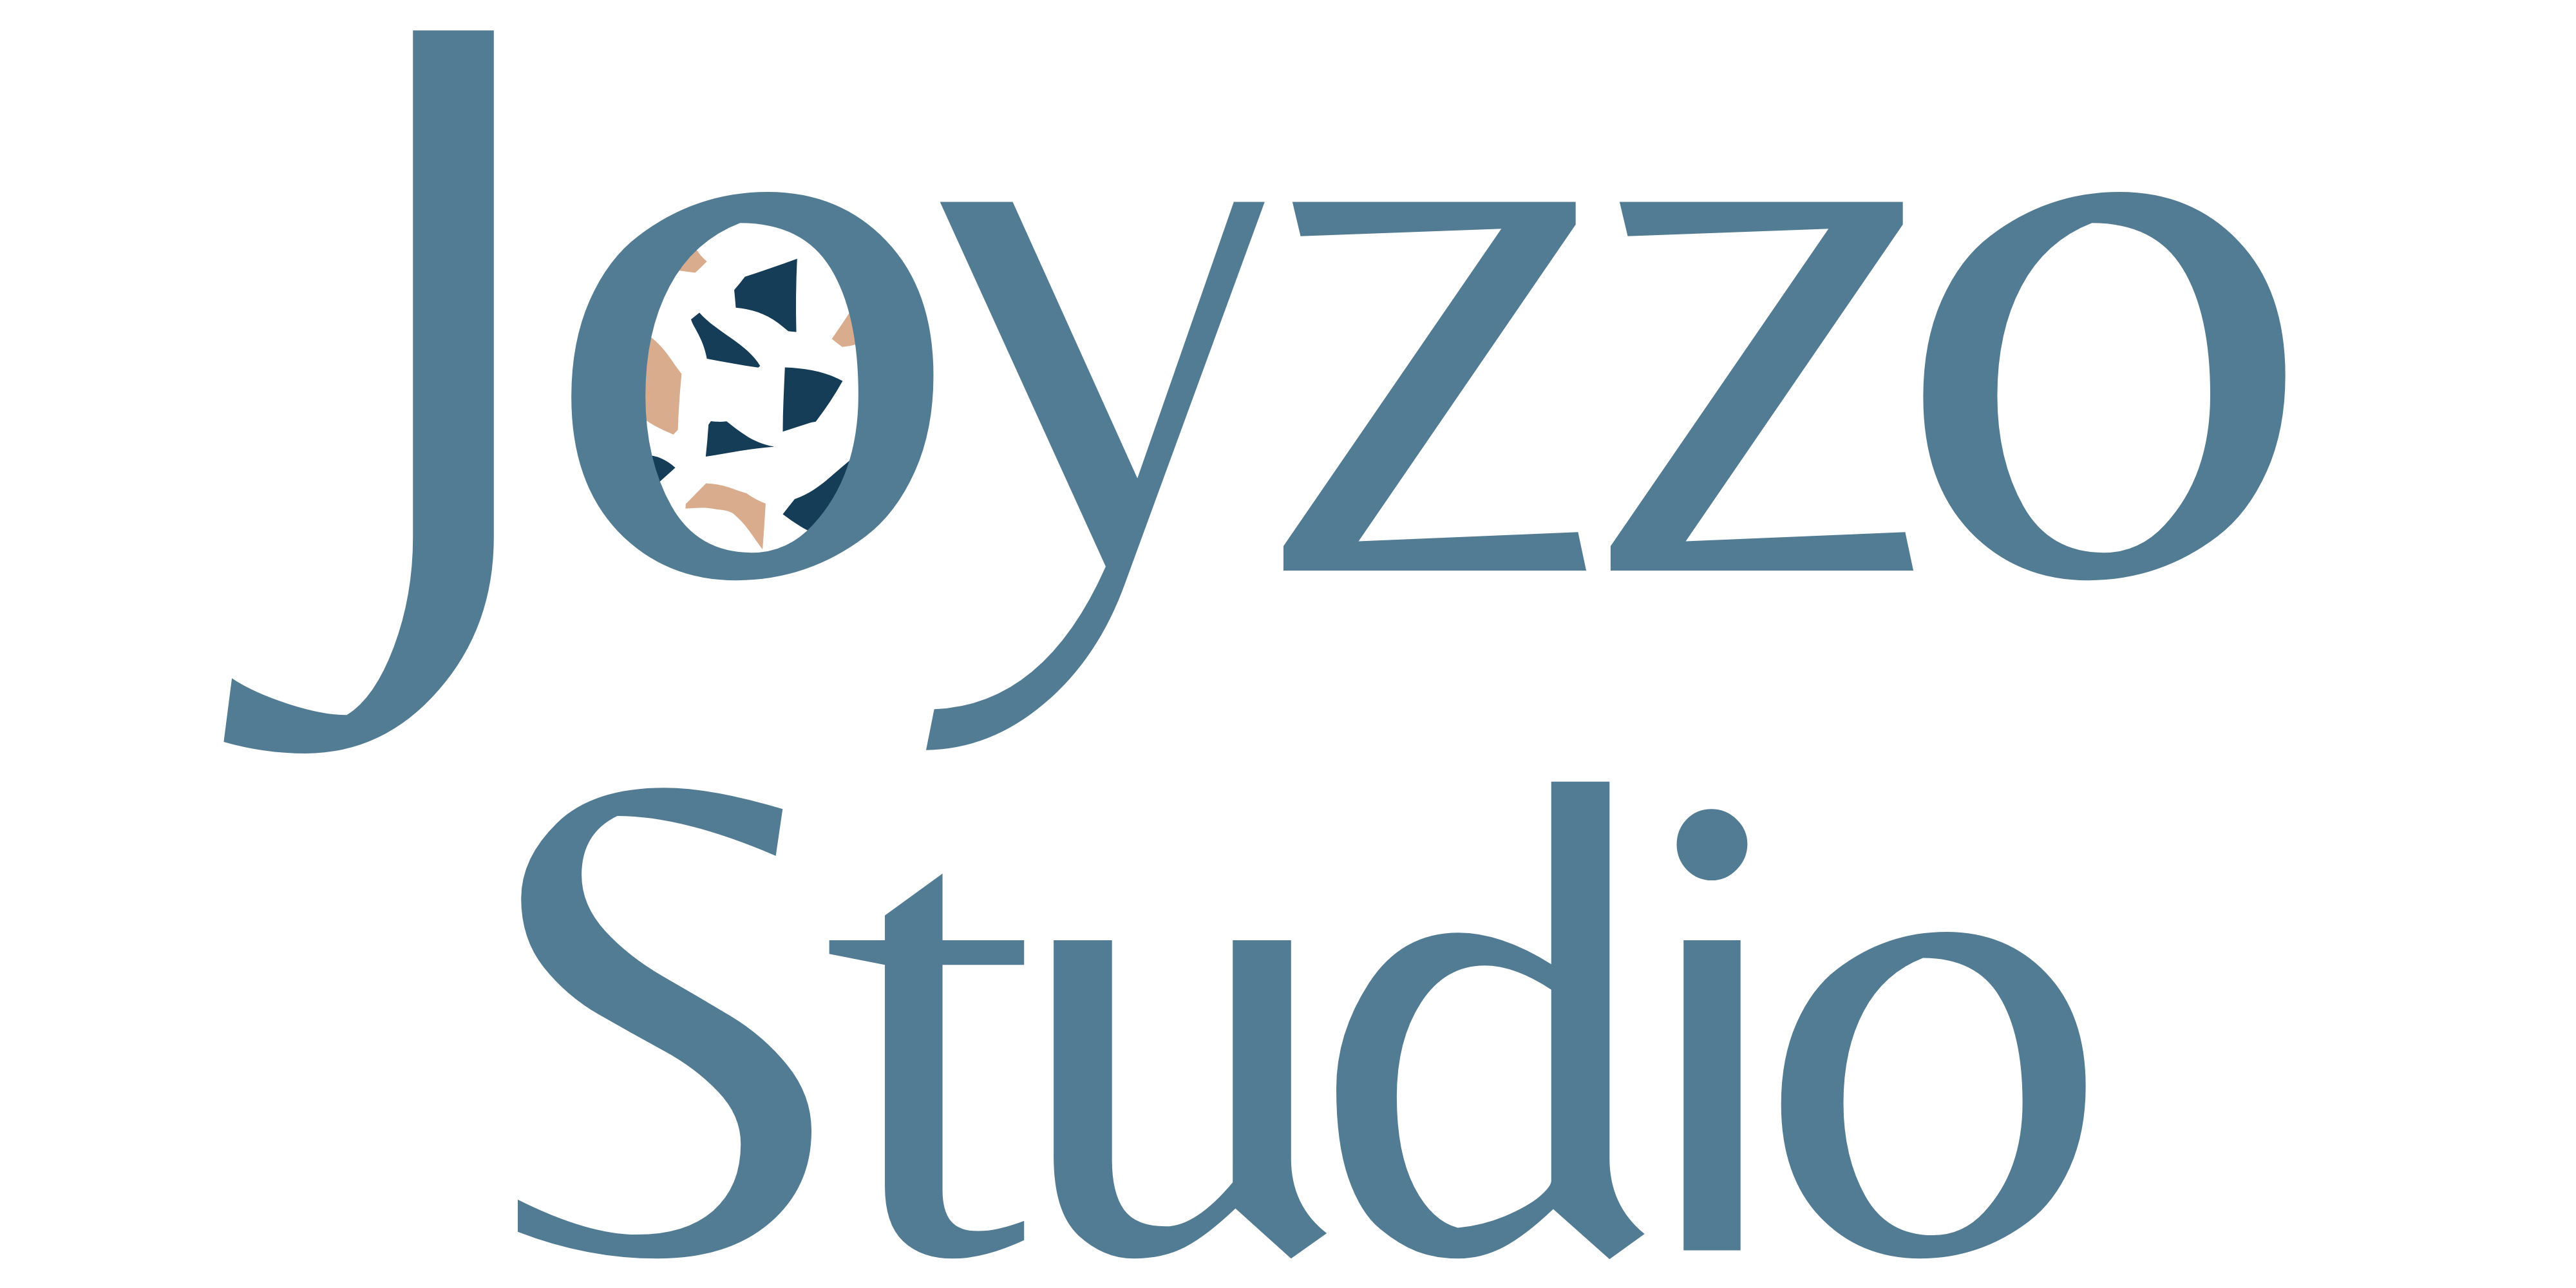 Joyzzo Studio